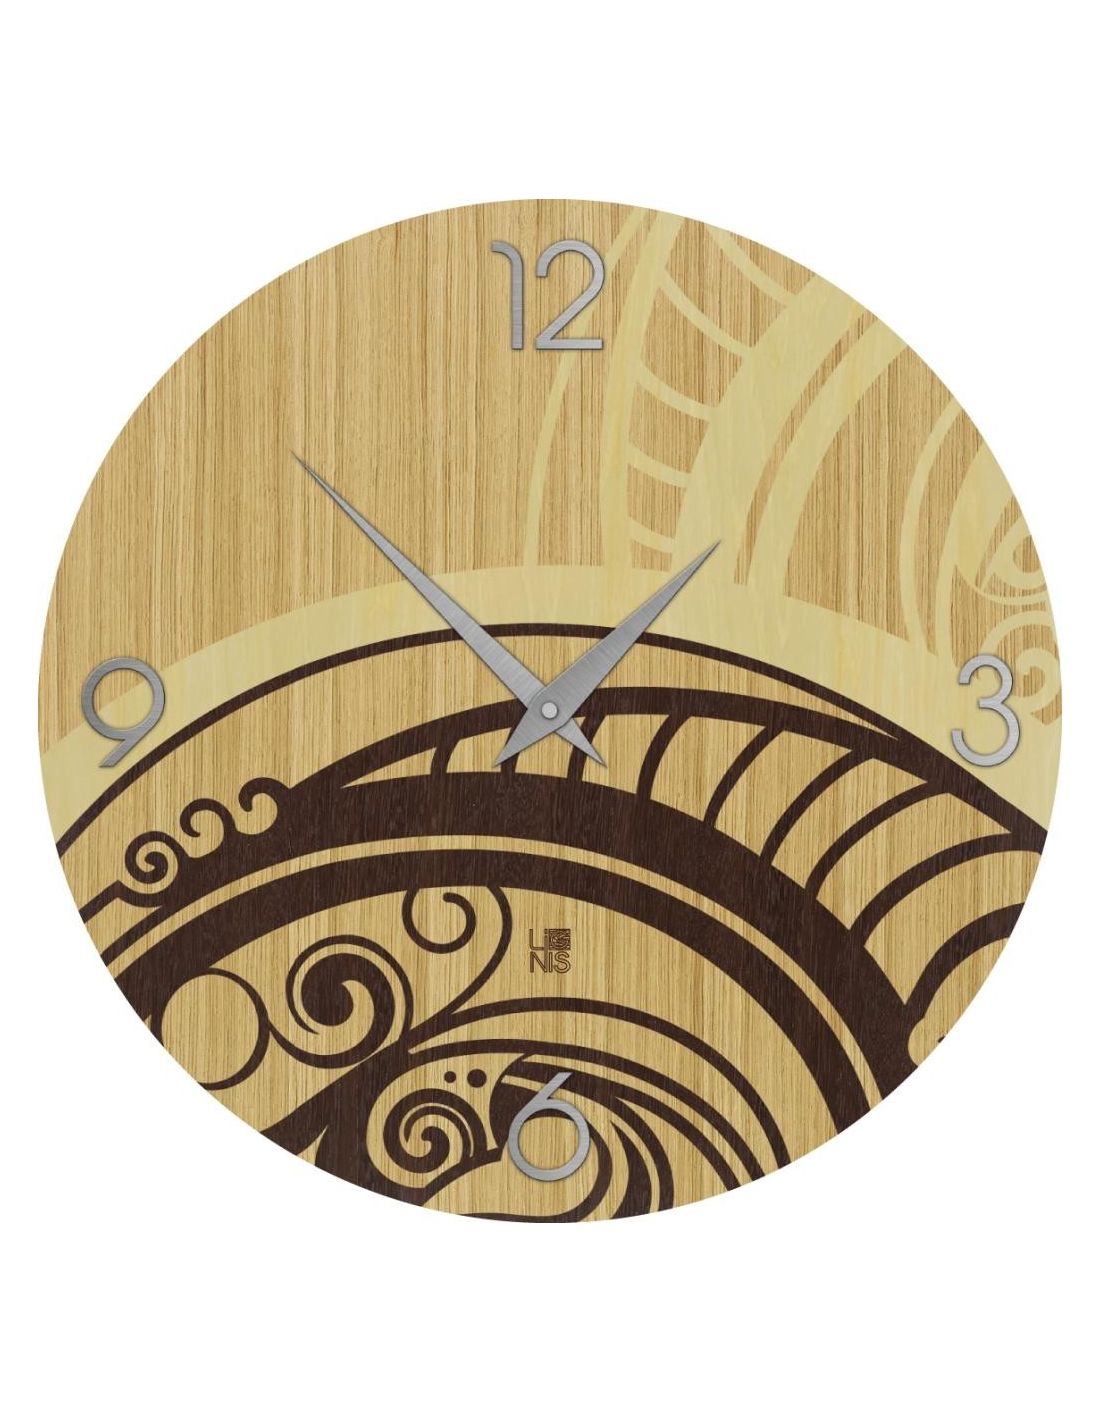 Gear orologio da parete in legno orologi da parete for Orologi particolari da parete